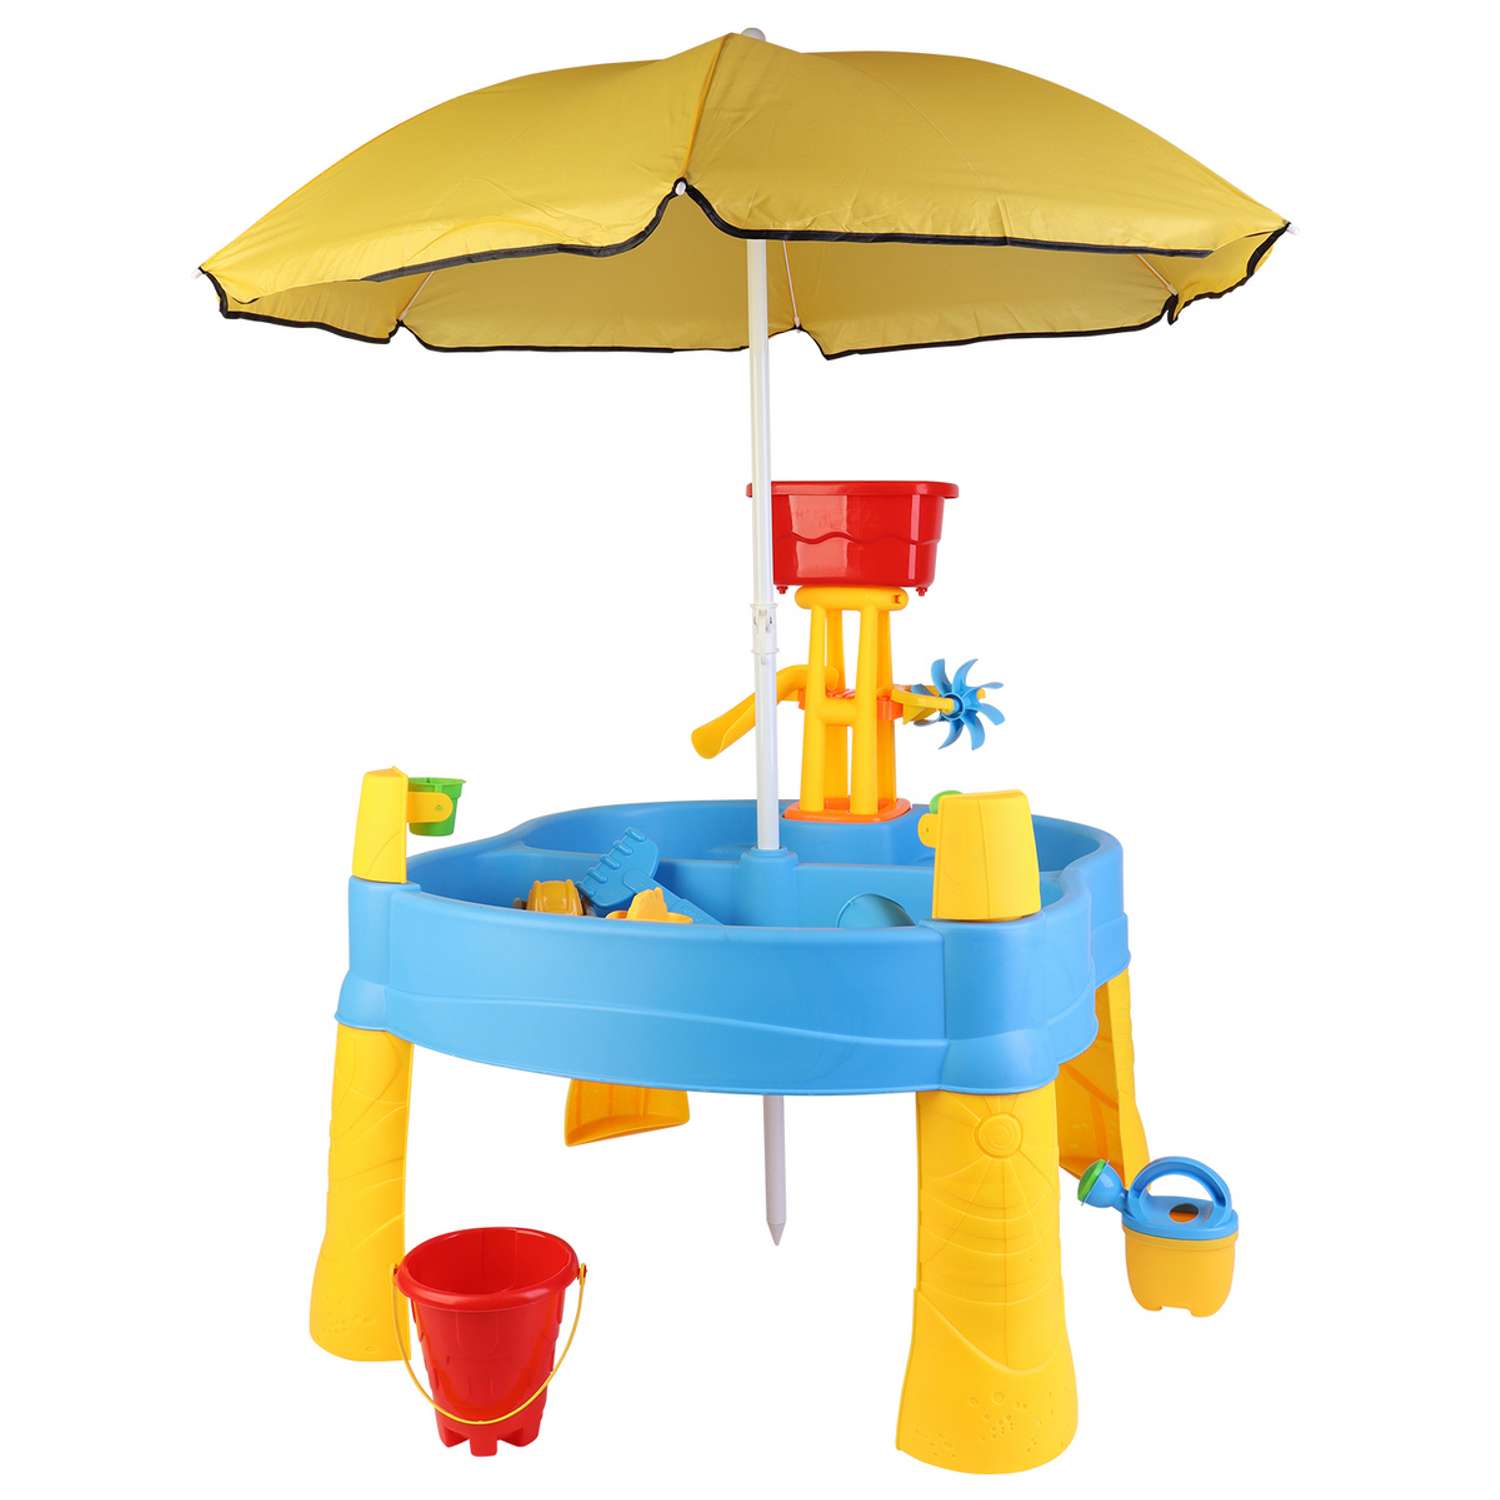 Стол для игр с песком и водой Hualian Toys Водная горка с вертушкой зонт от солнца 78х72х81 см - фото 2